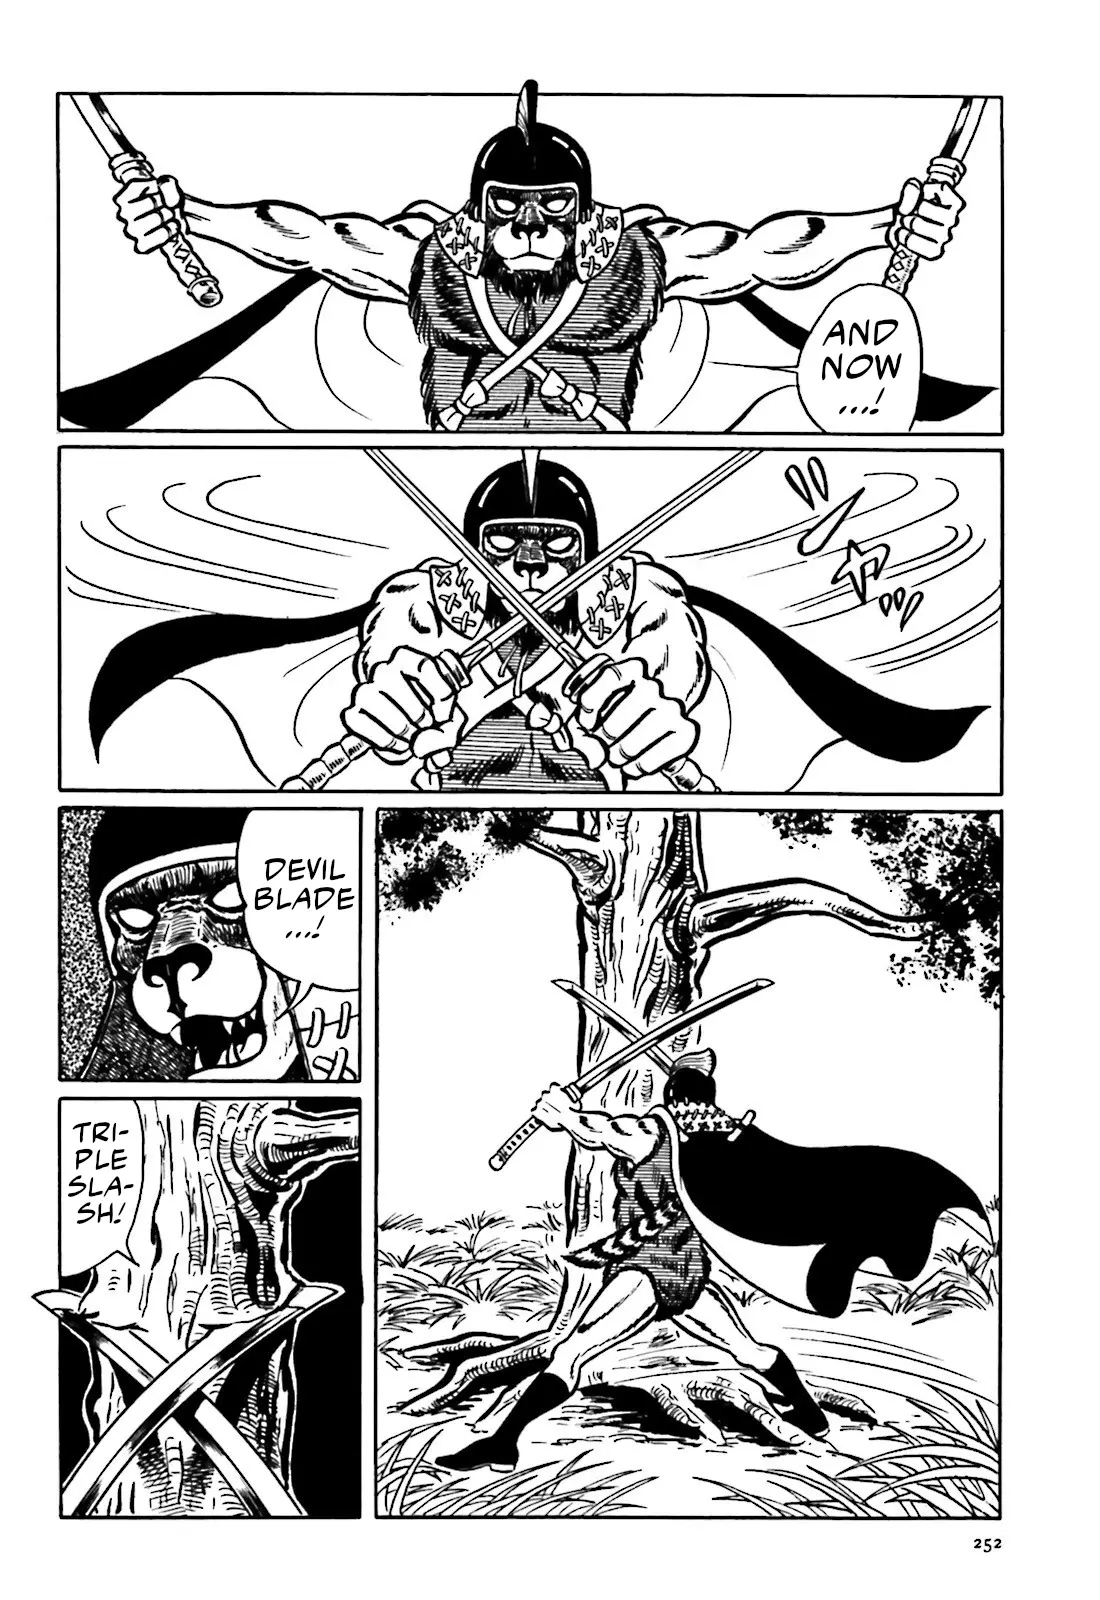 The Vigilant Lionmaru - 6 page 6-5856d4d1